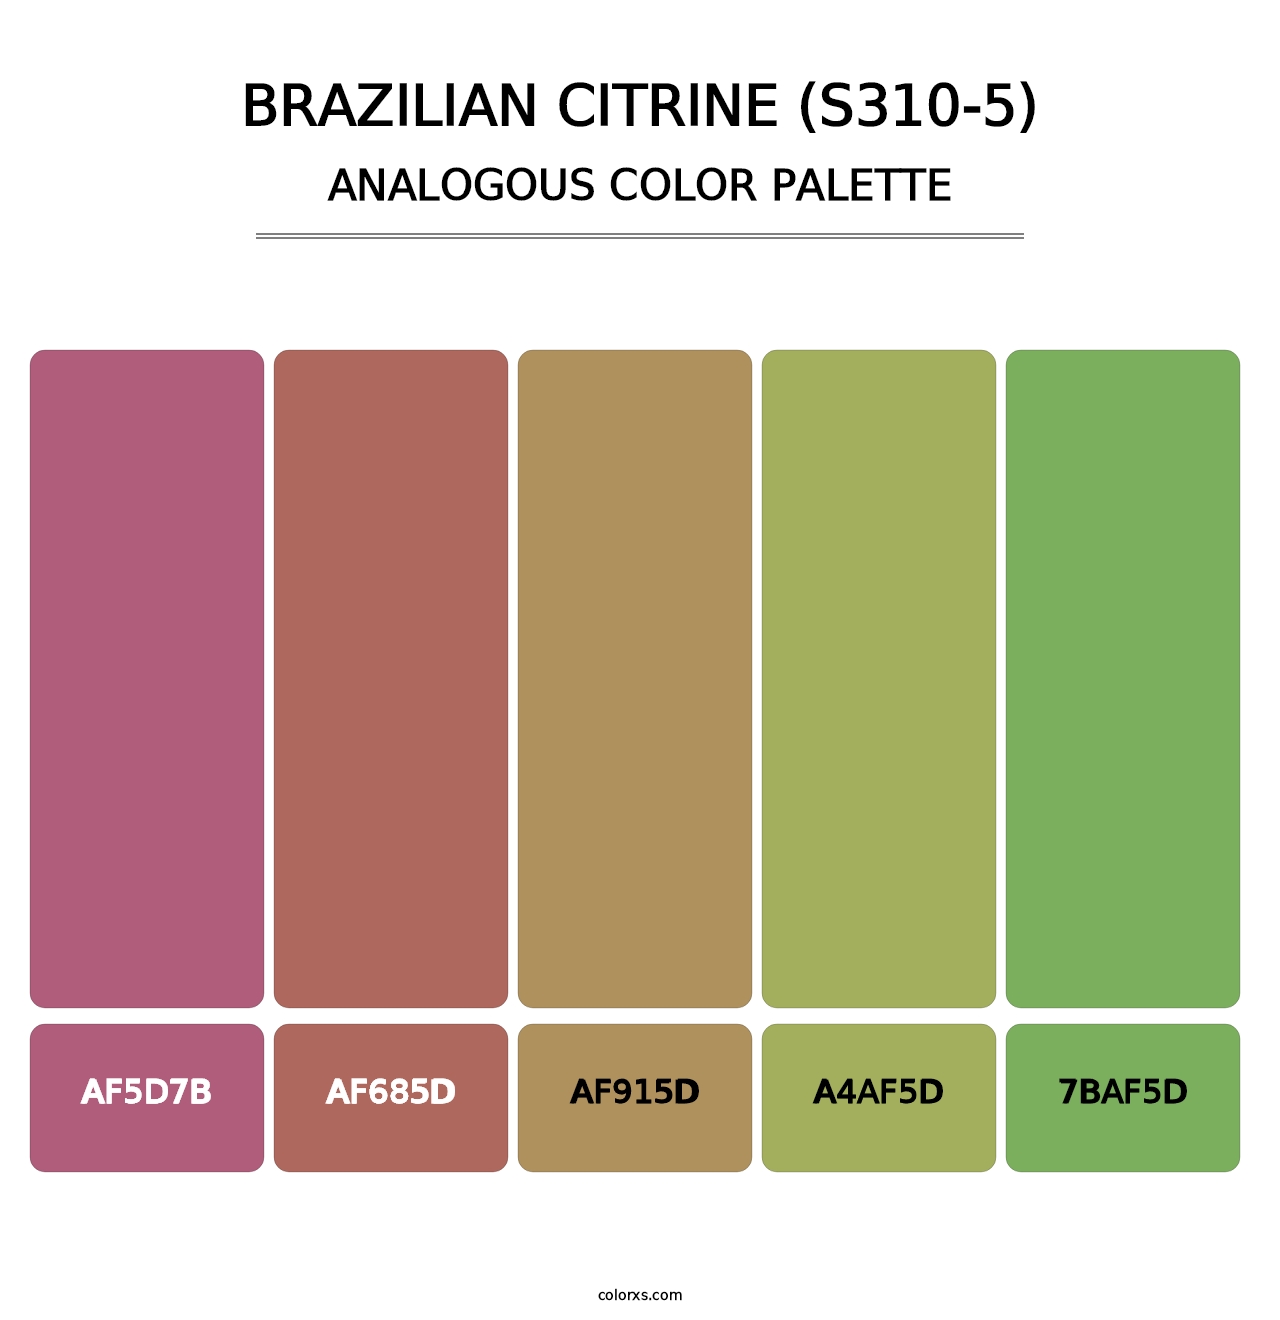 Brazilian Citrine (S310-5) - Analogous Color Palette